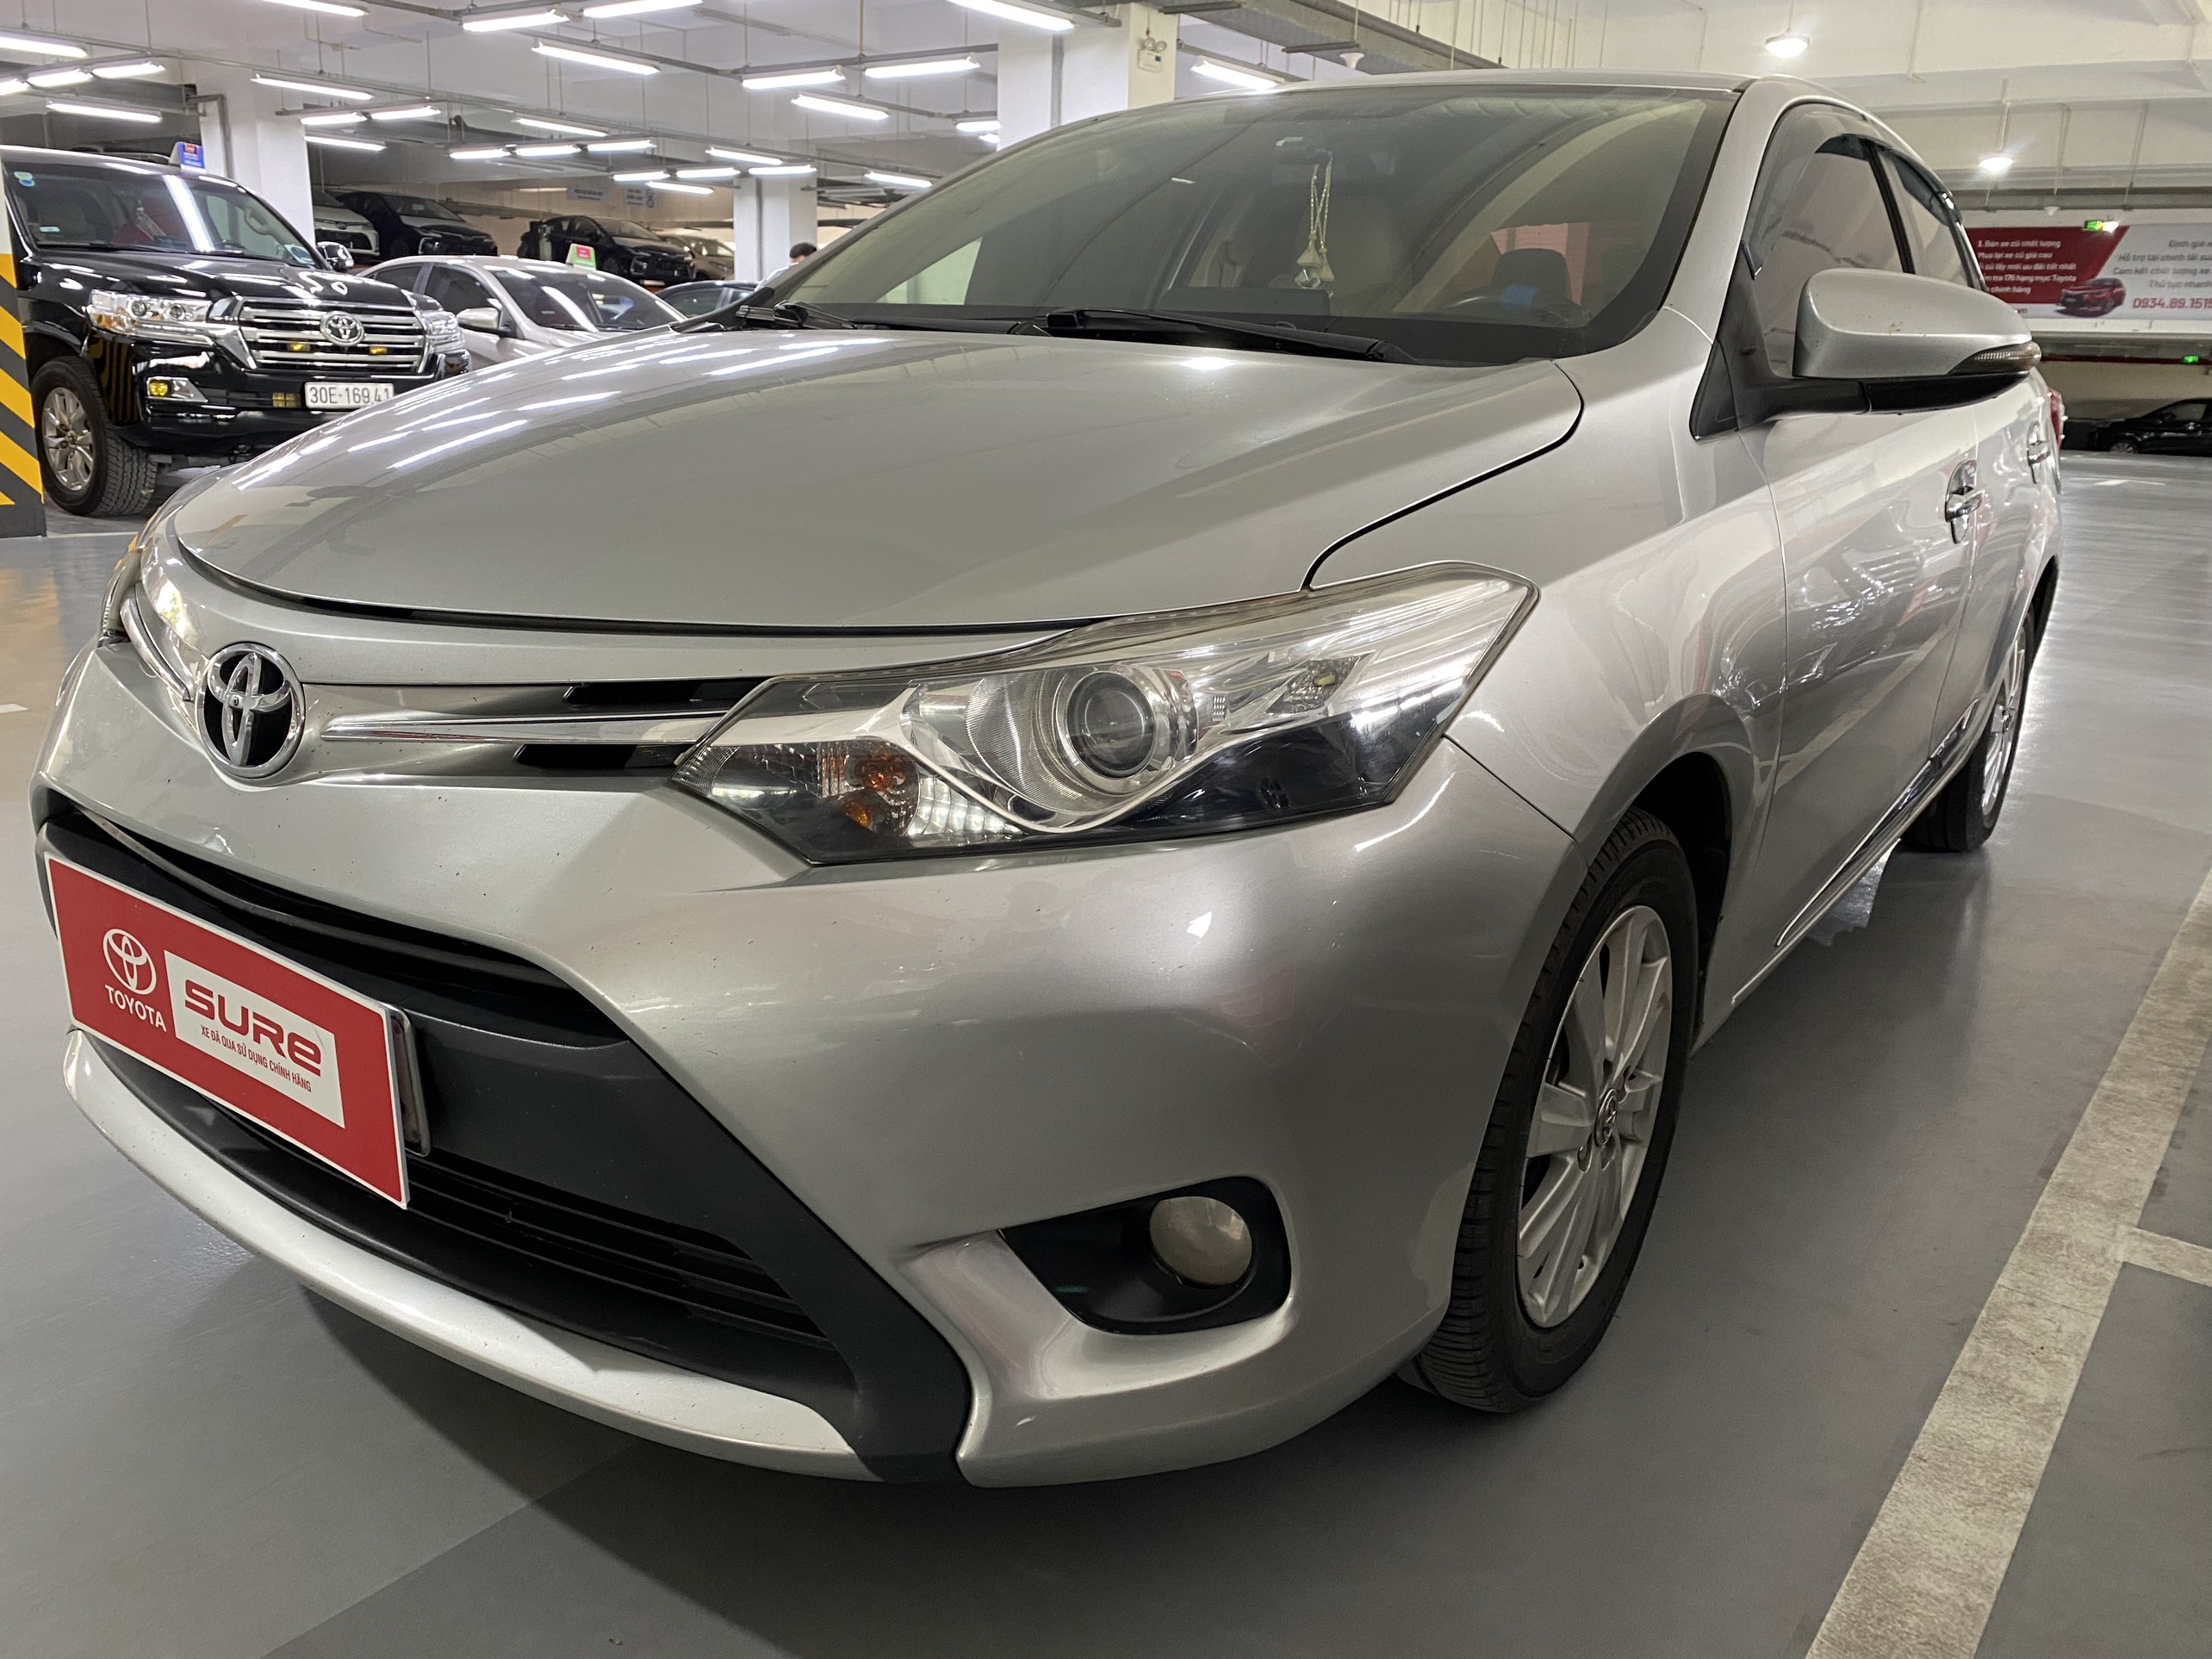 Mua Bán Xe Toyota Hilux 2015 Giá Rẻ Toàn quốc